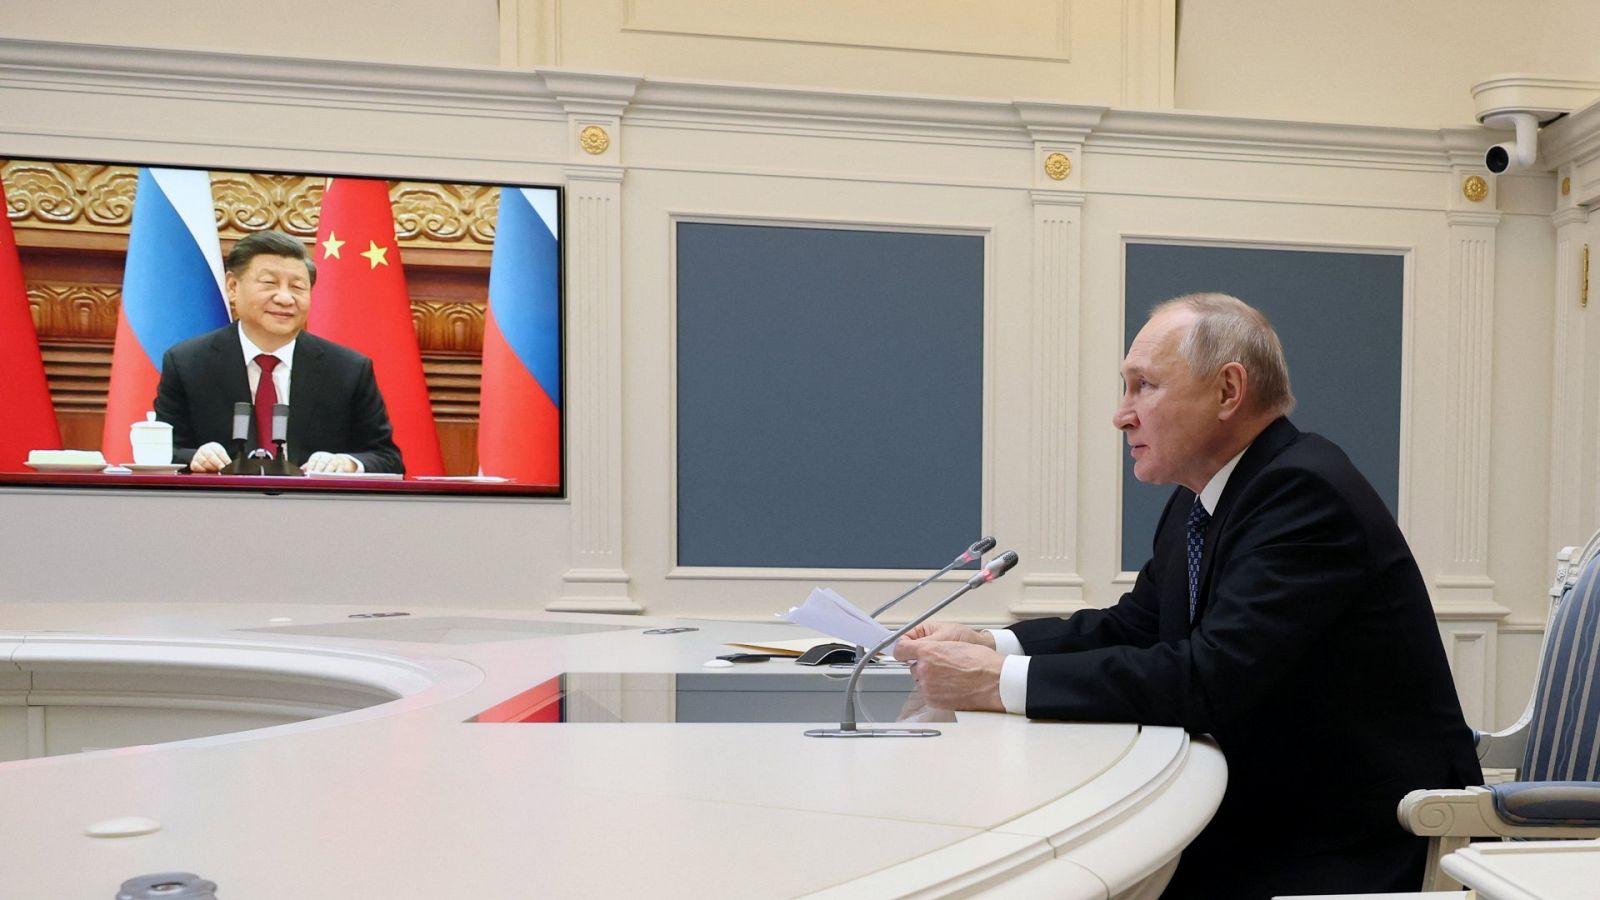 El presidente de Rusia, Vladimir Putin, en conversación con el presidente de China, Xi Jinping, por videoconferencia